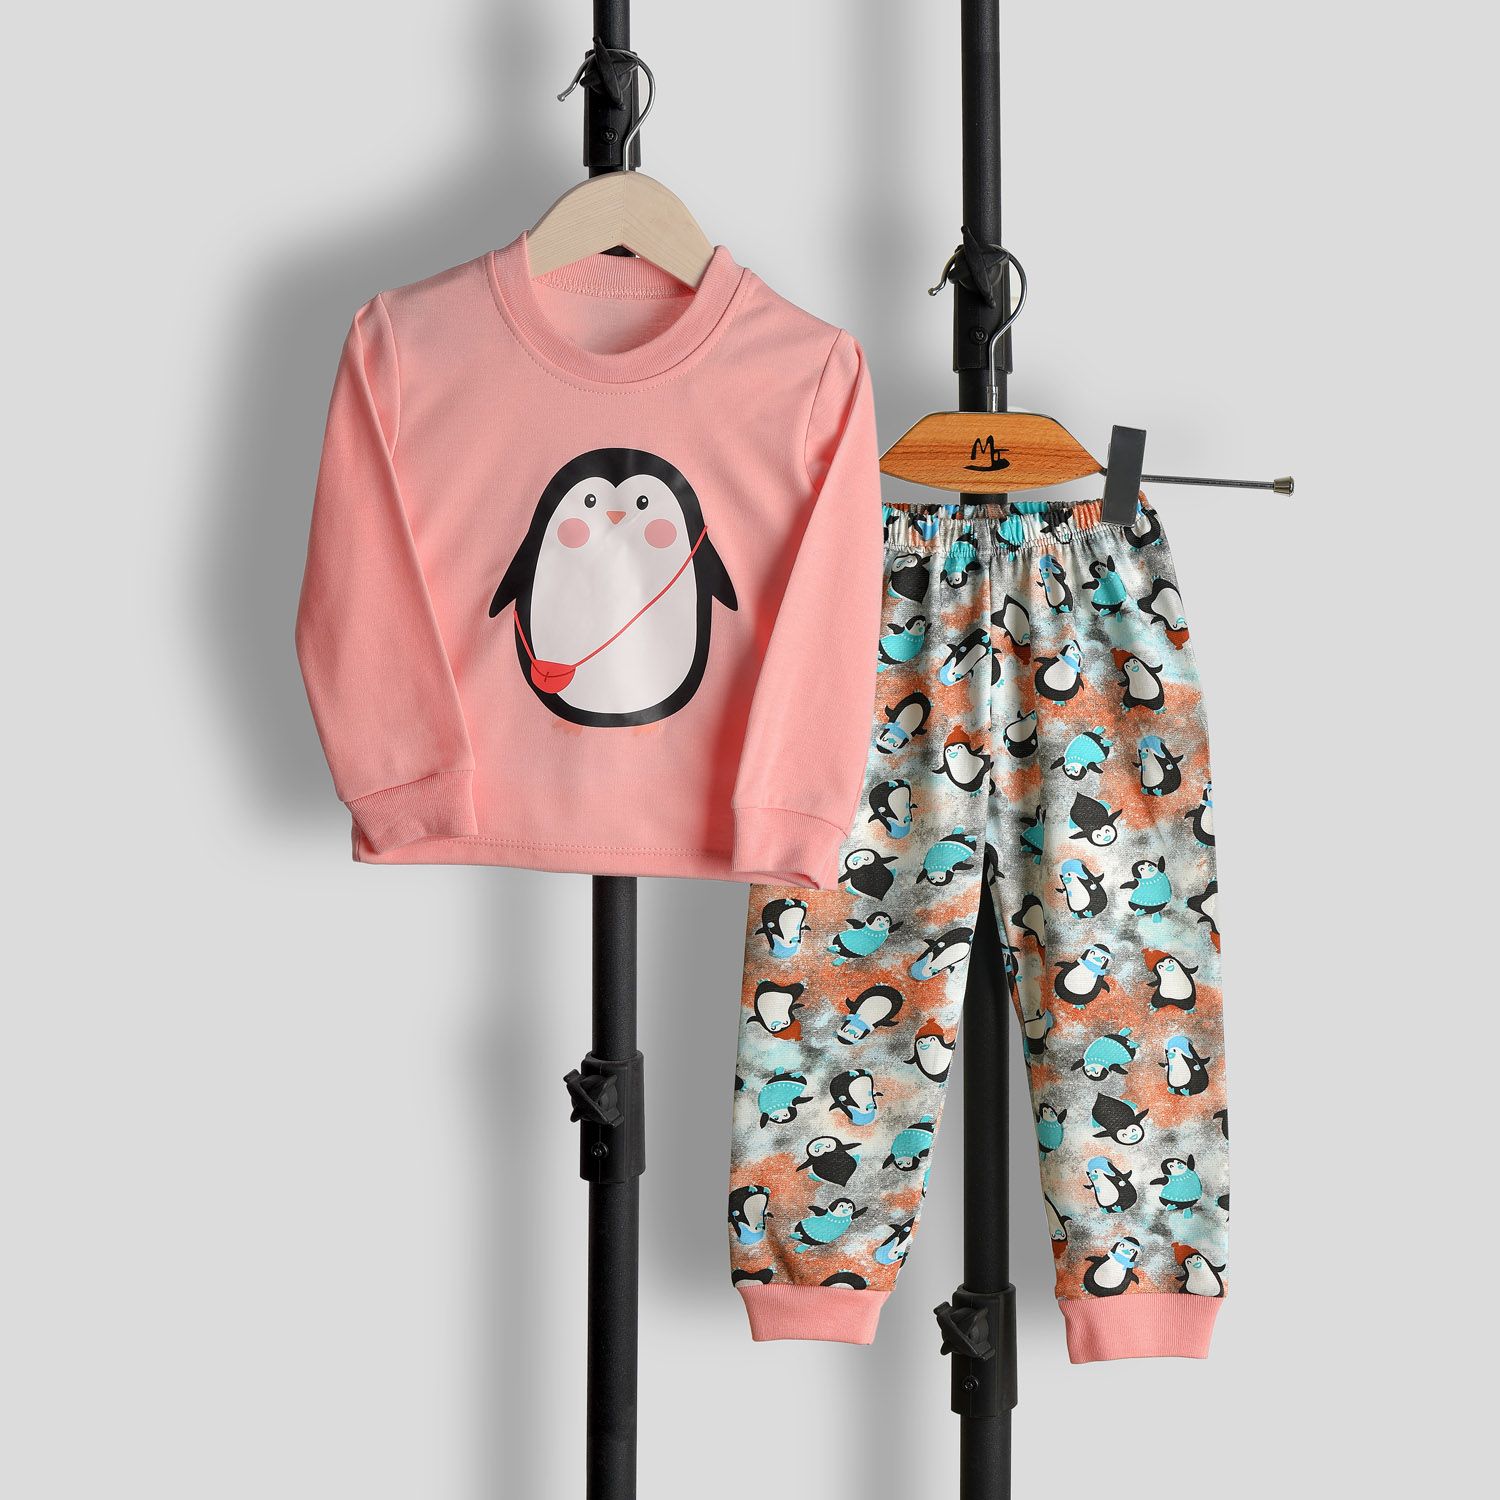 ست تی شرت آستین بلند و شلوار بچگانه سپیدپوش مدل پنگوئن  کد 1402902 -  - 12